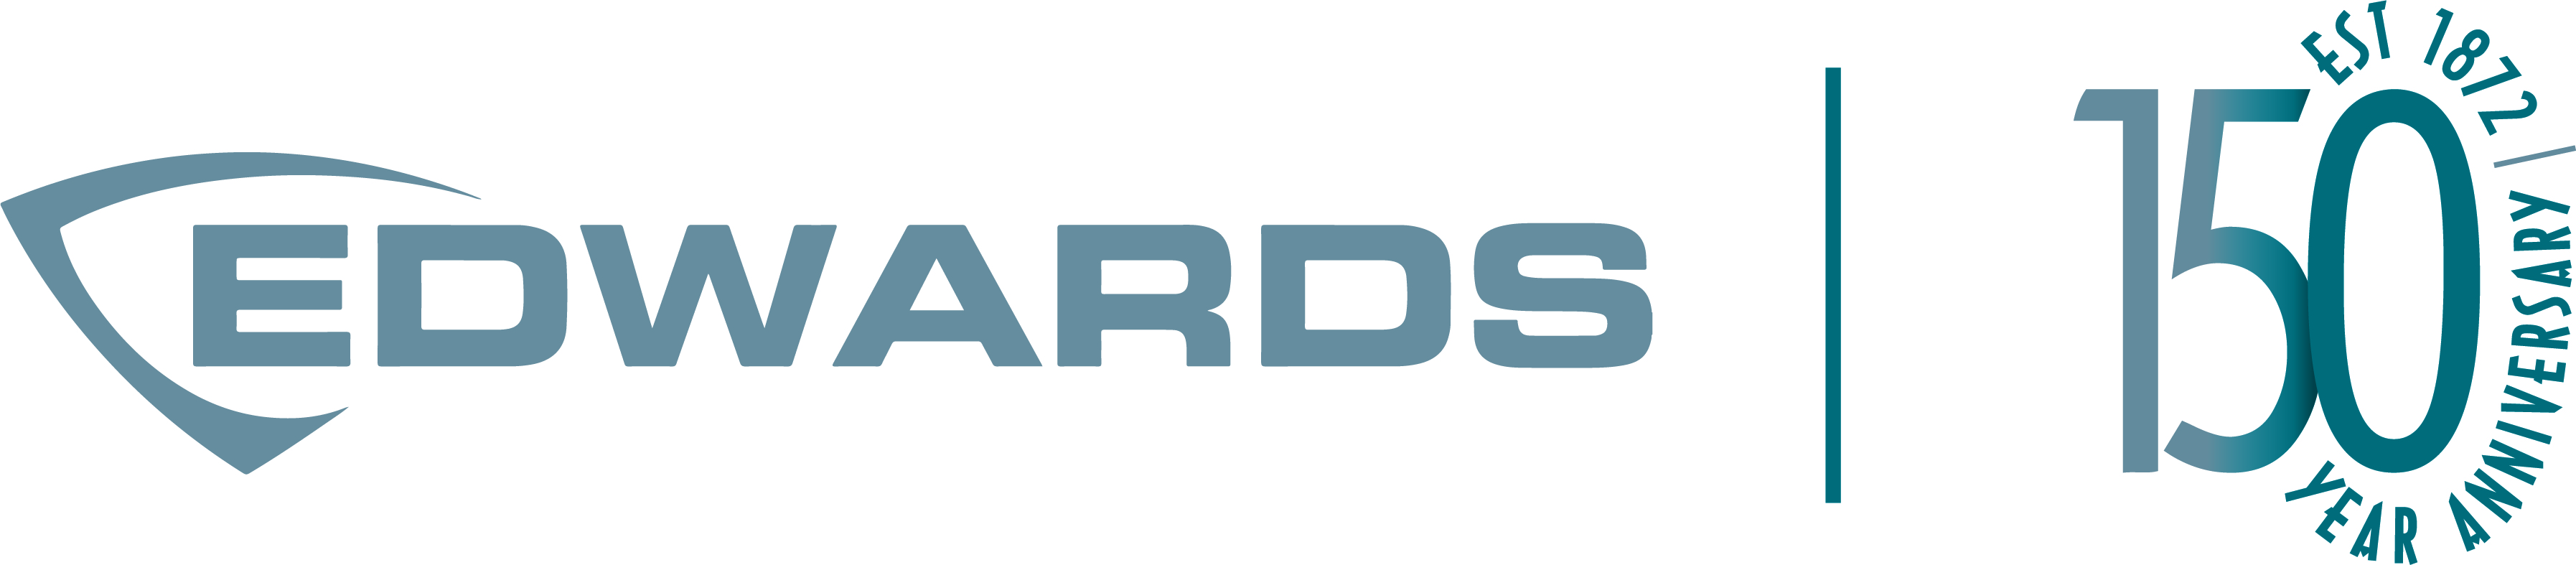 edwards-150-years-logo